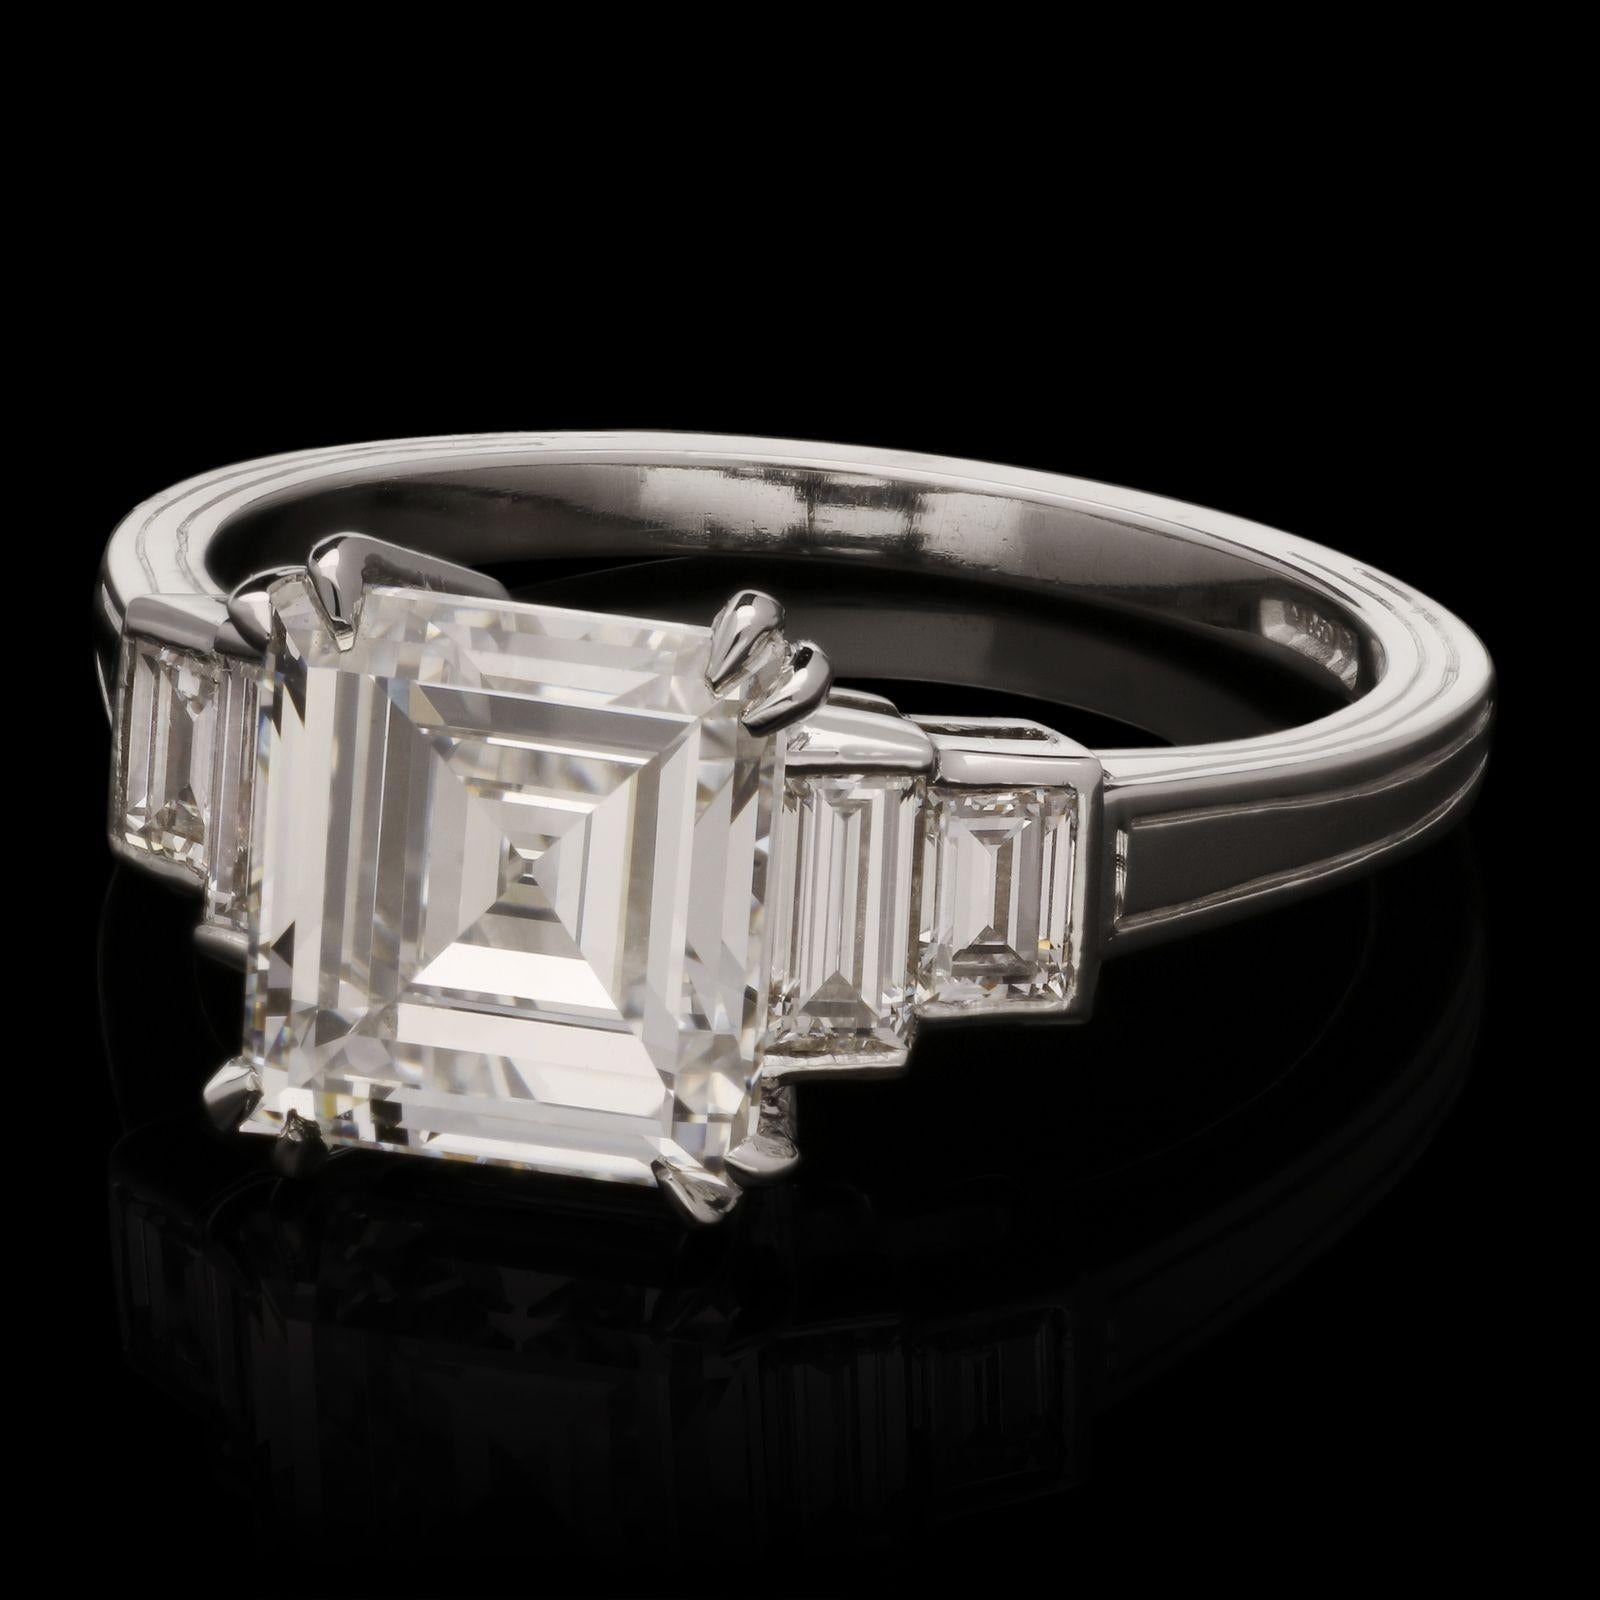 Ein wunderschöner Vintage-Diamant im Carré-Schliff mit einem Gewicht von 2,28 ct., Farbe D und Reinheit VS2, doppelt eckig gefasst zwischen zwei Schultern aus Diamanten im Baguetteschliff auf beiden Seiten, alles in einer fein gearbeiteten